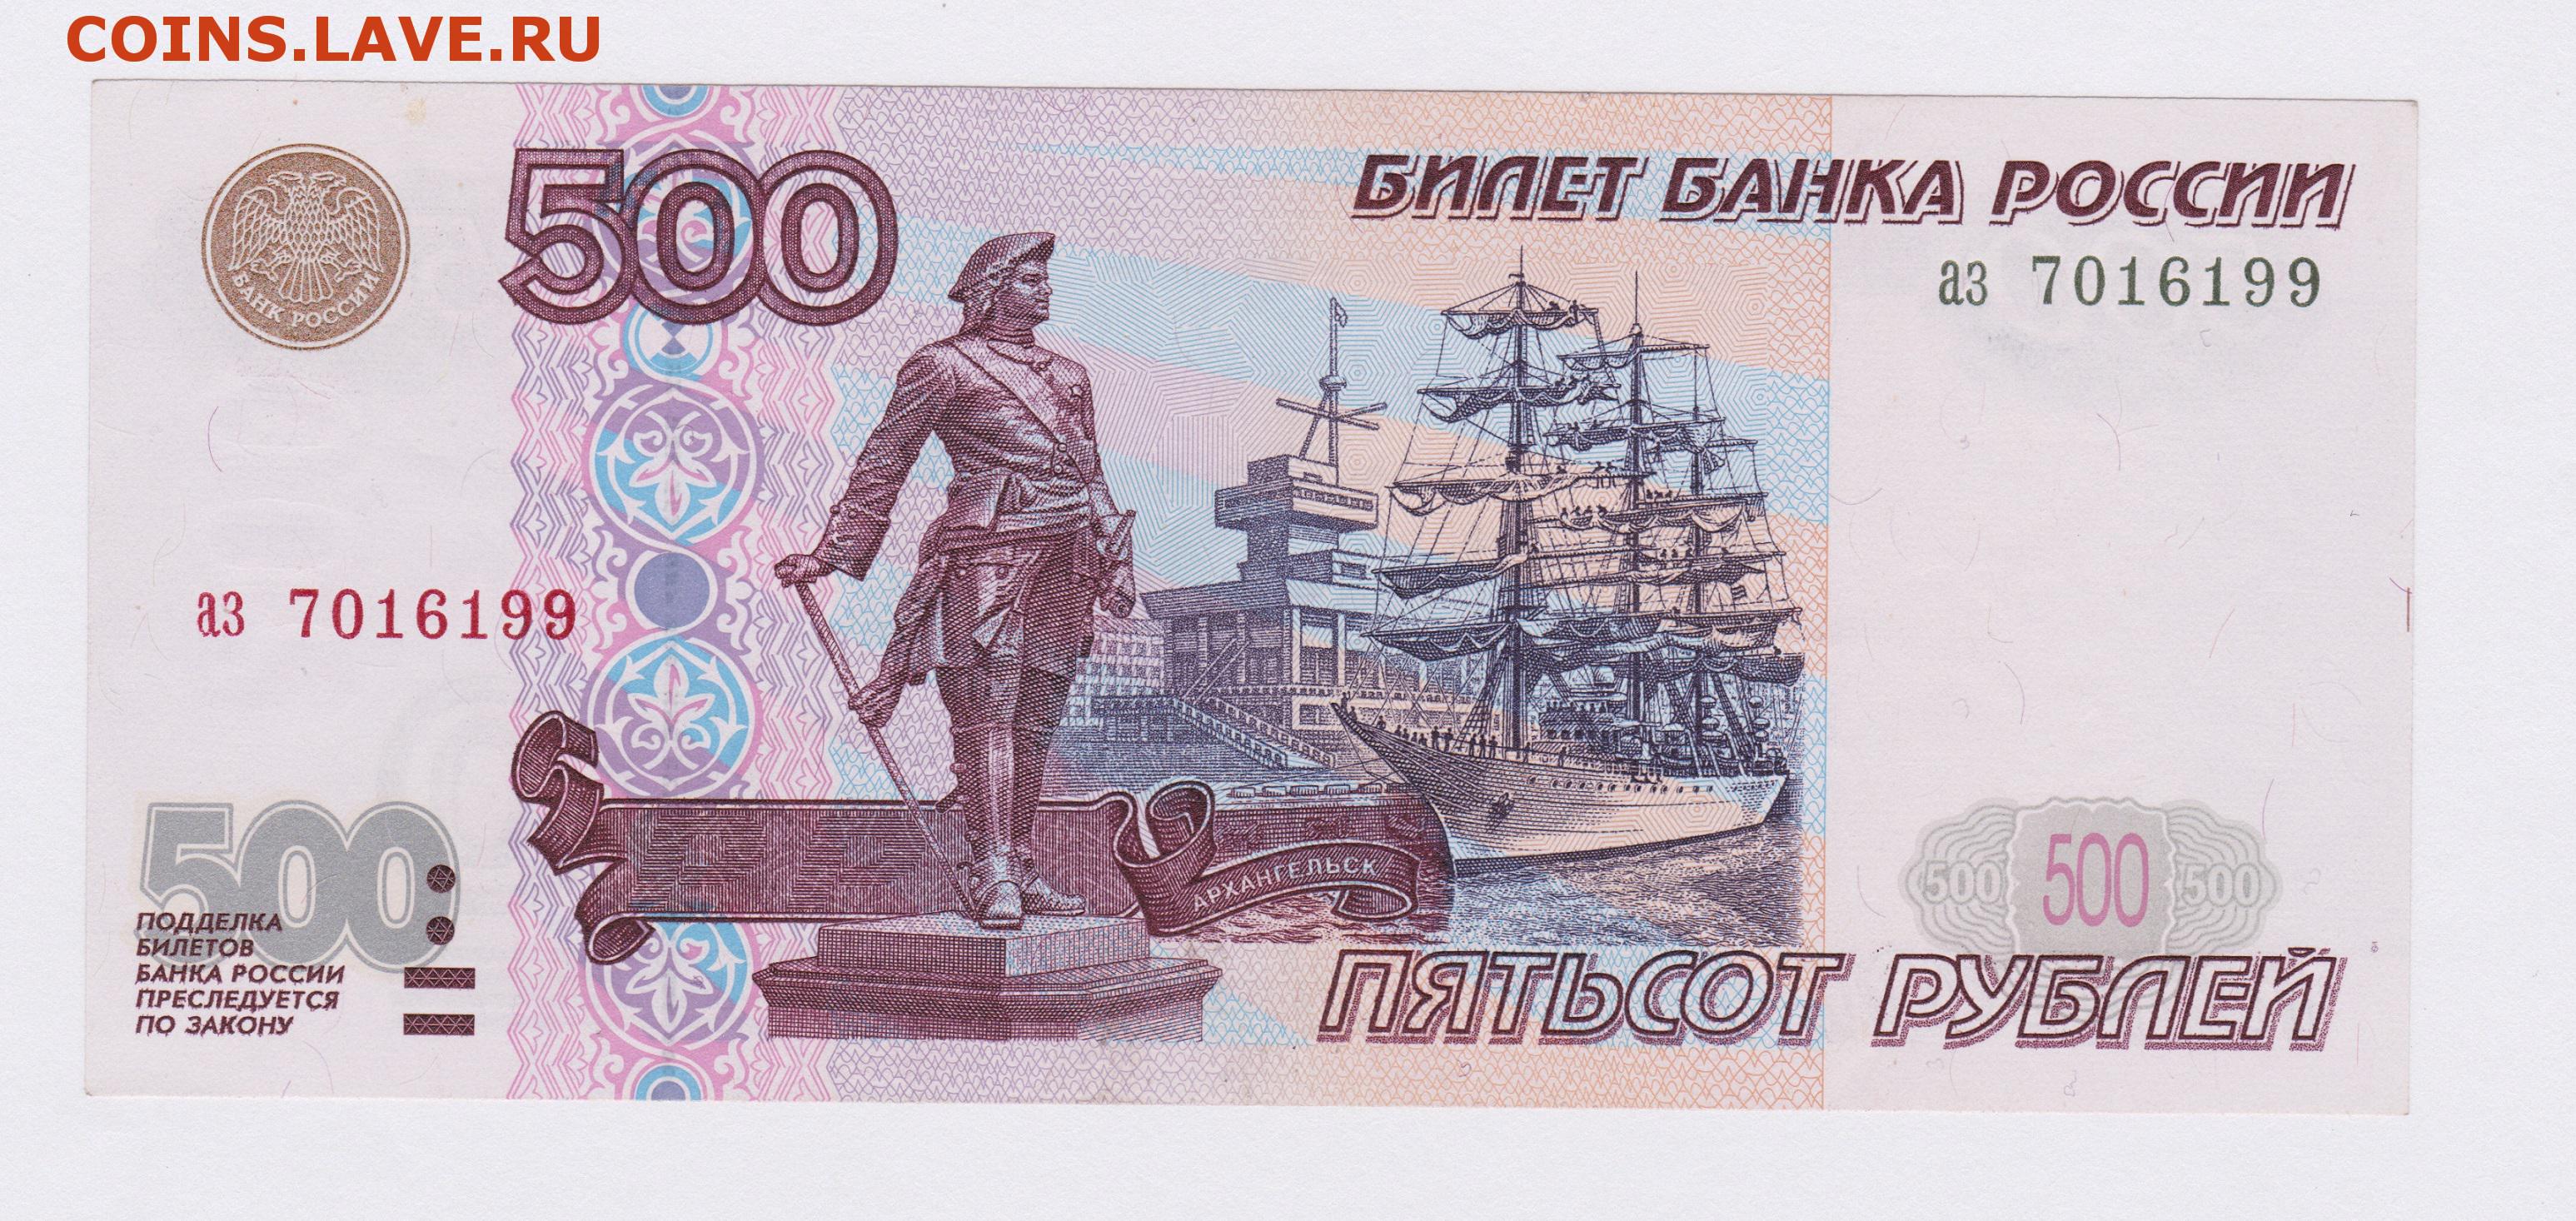 500 рублей за штуку. Купюра 500 рублей. 500 Рублей. Банкнота 500 рублей. 500 Рублей изображение на купюре.